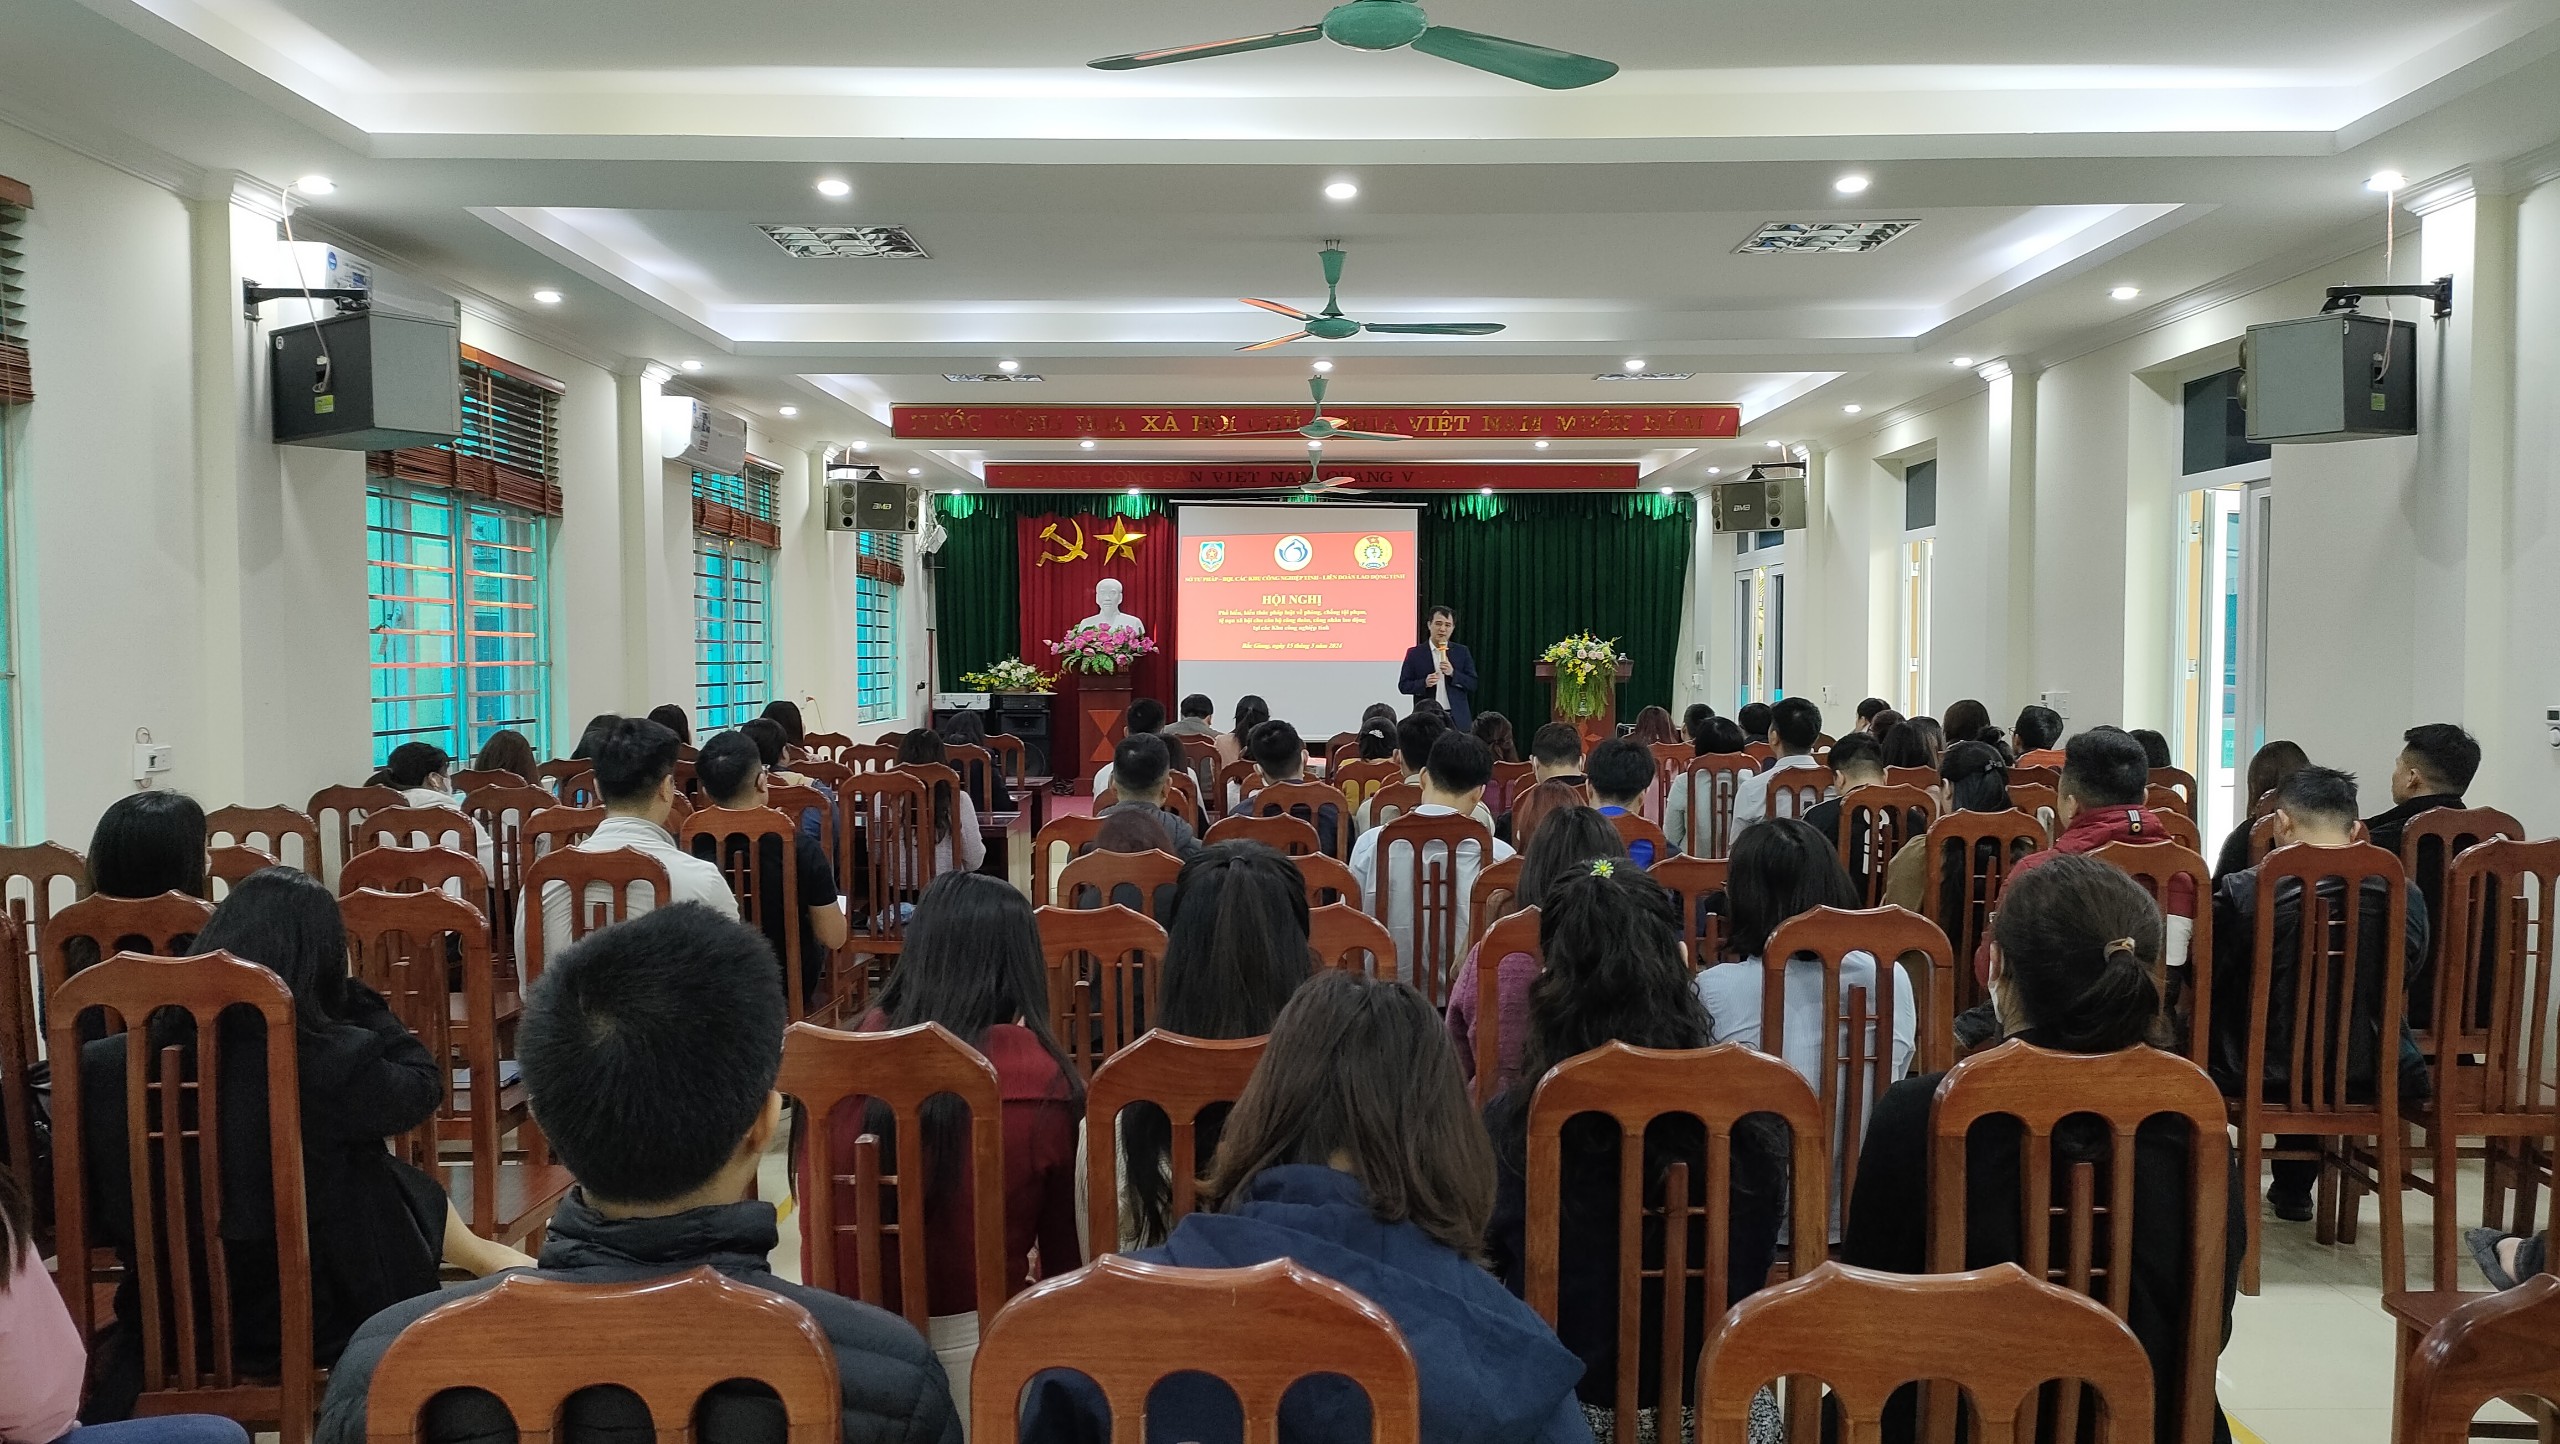 Hội nghị tuyên truyền, phổ biến về phòng, chống tội phạm, tệ nạn xã hội tại các Khu công nghiệp trên địa bàn tỉnh Bắc Giang|https://bqlkcn.bacgiang.gov.vn/zh_CN/chi-tiet-tin-tuc/-/asset_publisher/xme8LCPEx4VA/content/hoi-nghi-tuyen-truyen-pho-bien-ve-phong-chong-toi-pham-te-nan-xa-hoi-tai-cac-khu-cong-nghiep-tren-ia-ban-tinh-bac-giang